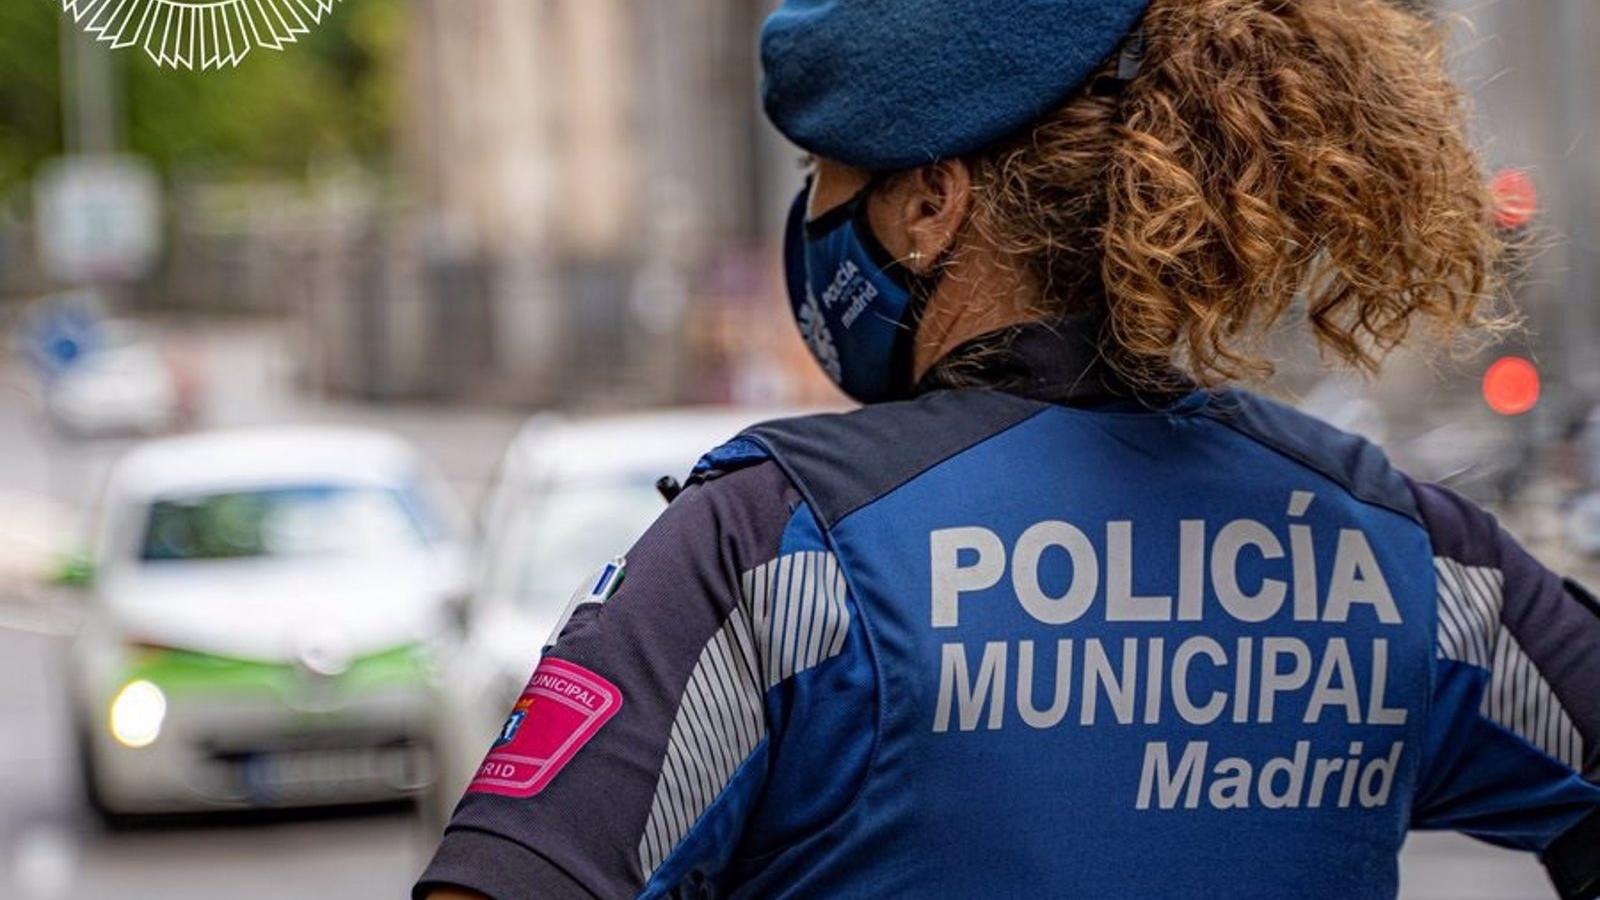 La Policía Municipal estudia acciones judiciales contra Pablo Iglesias